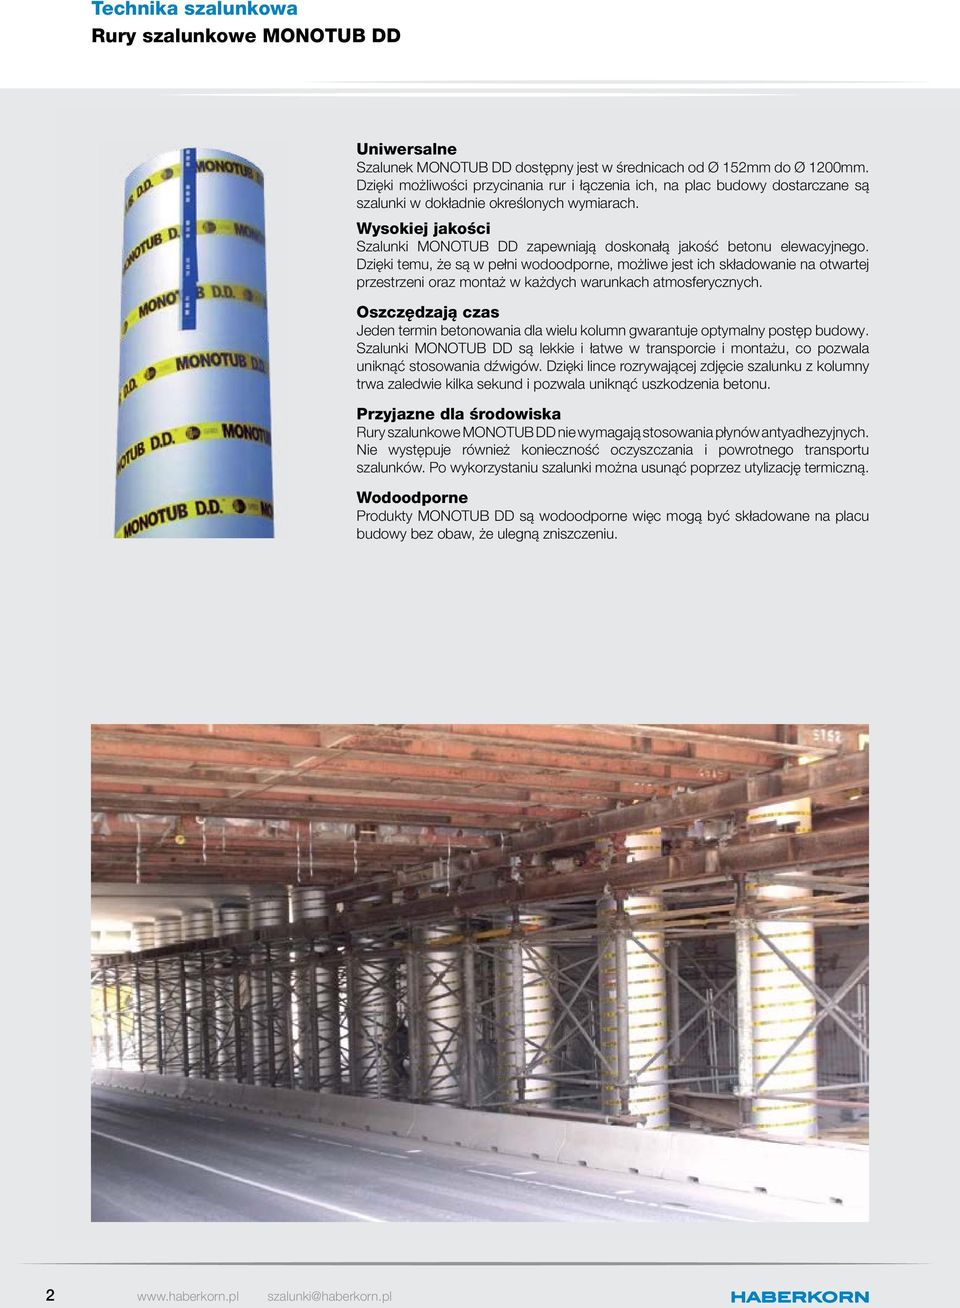 Wysokiej jakości Szalunki MONOTUB DD zapewniają doskonałą jakość betonu elewacyjnego.